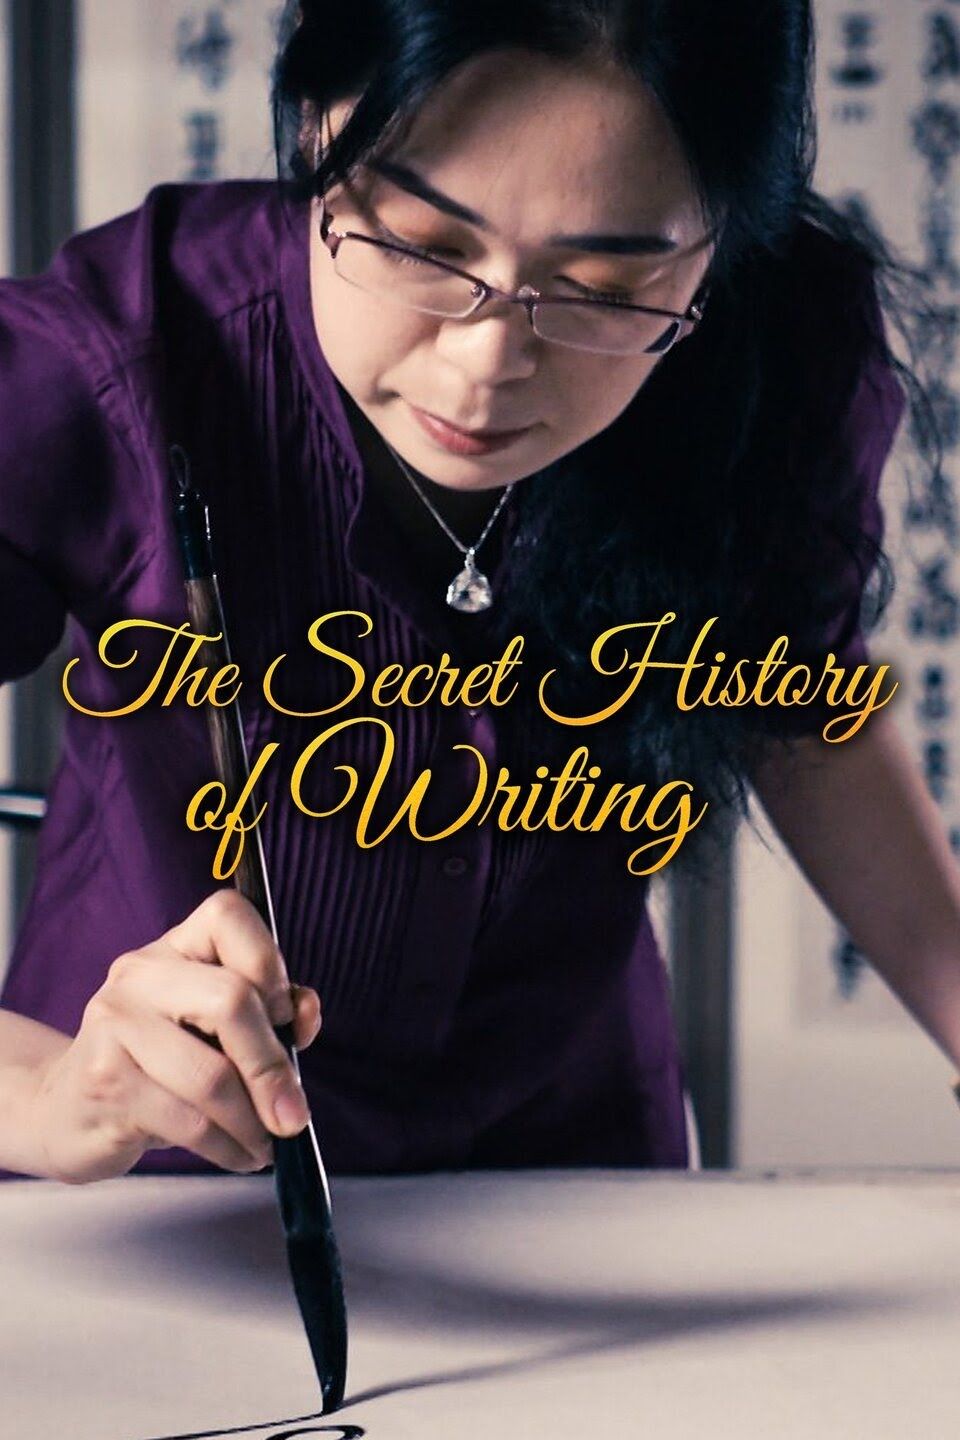 The Secret History of Writing ne zaman